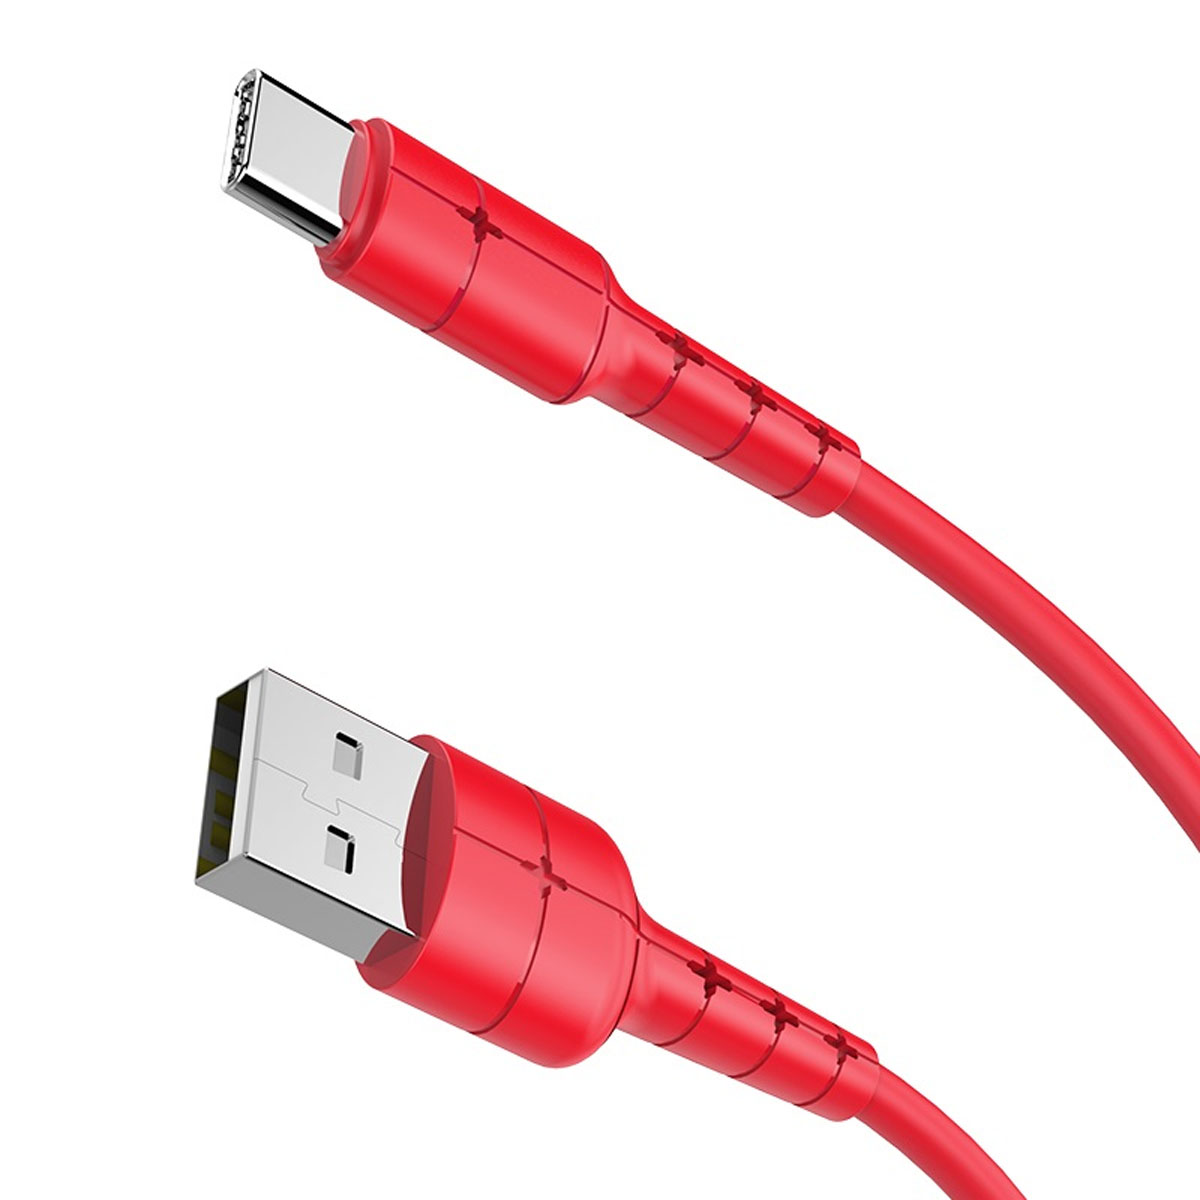 Кабель HOCO X30 Star USB Type C, 3A, длина 1.2 метра, цвет красный